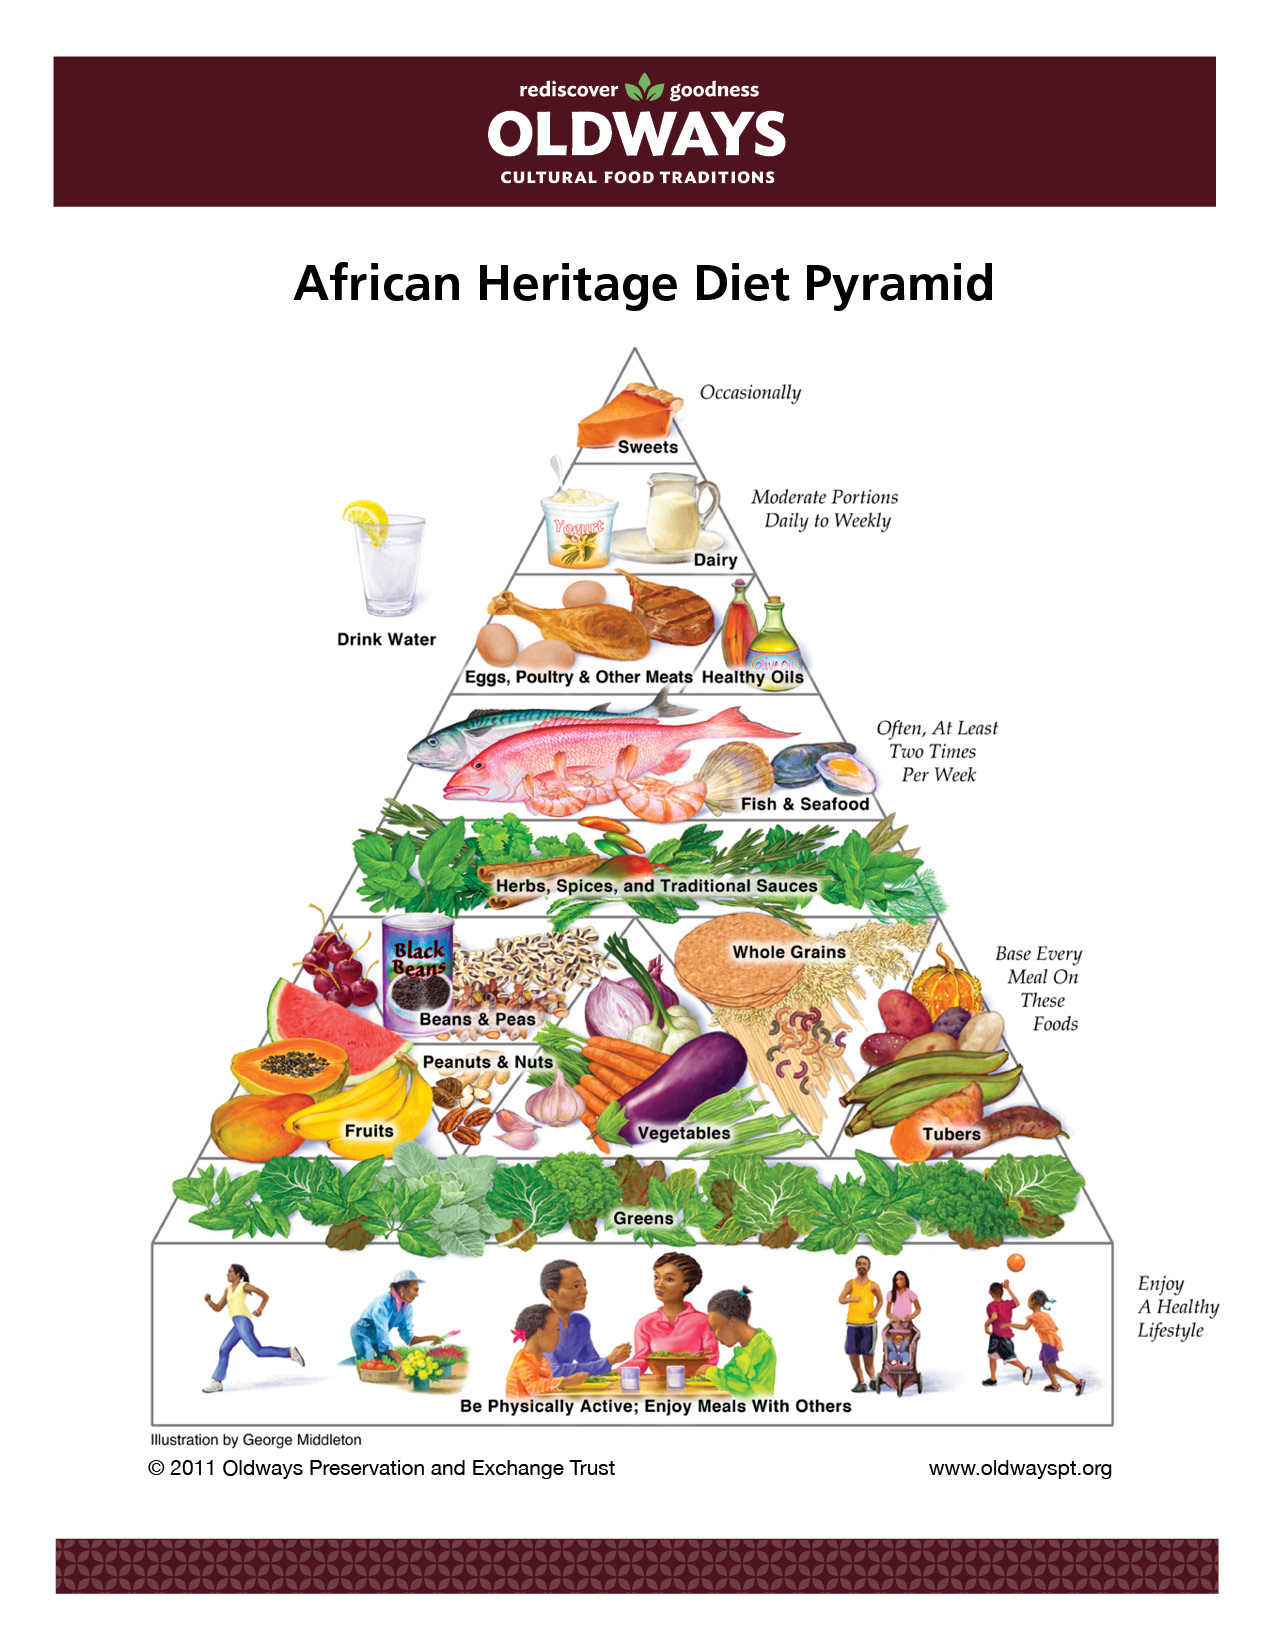 Состав африканской диеты